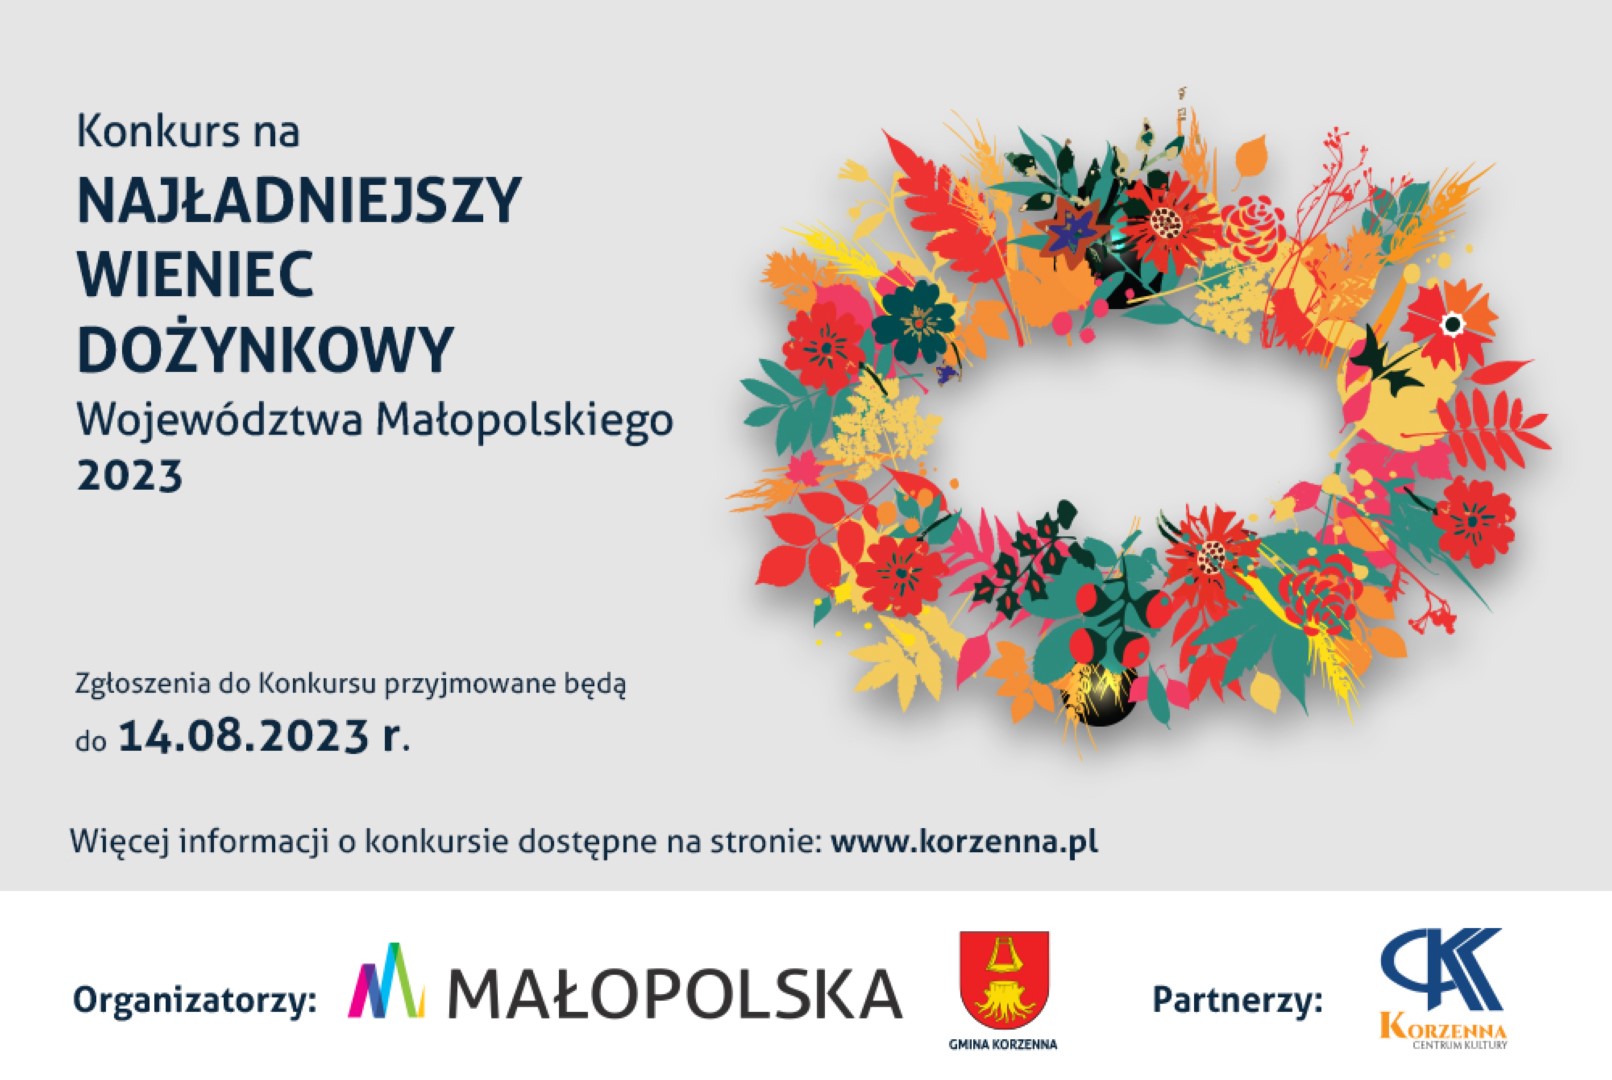 Konkurs na najładniejszy Wieniec Dożynkowy Województwa Małopolskiego ogłoszony